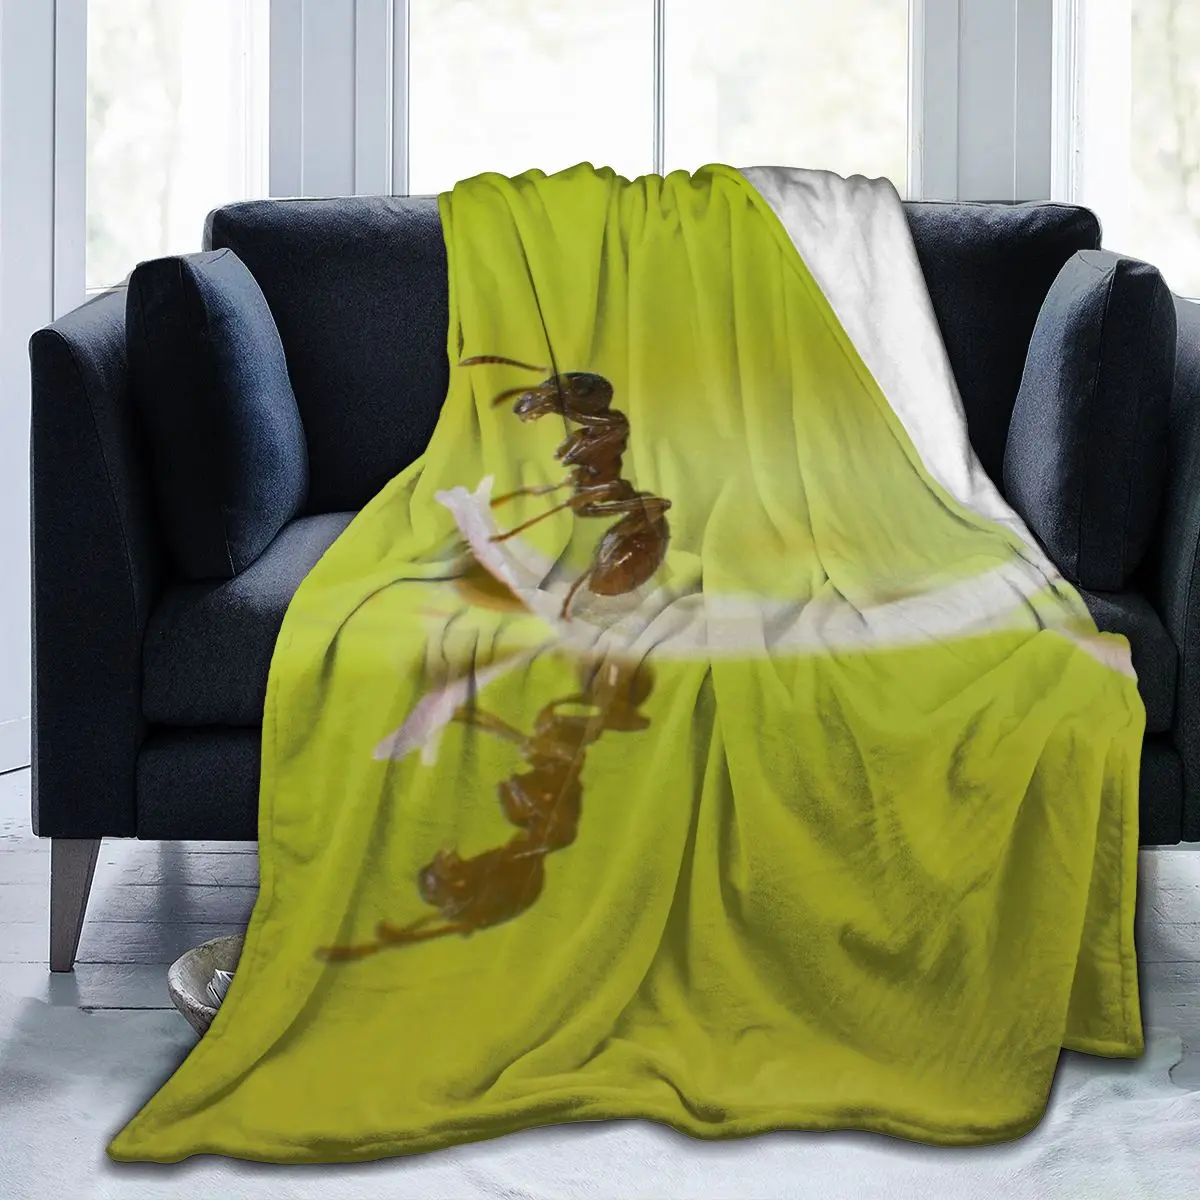 

Одеяло с 3D принтом в виде муравьев, покрывало в стиле ретро, постельное белье, квадратное шерстяное мягкое одеяло для пикника